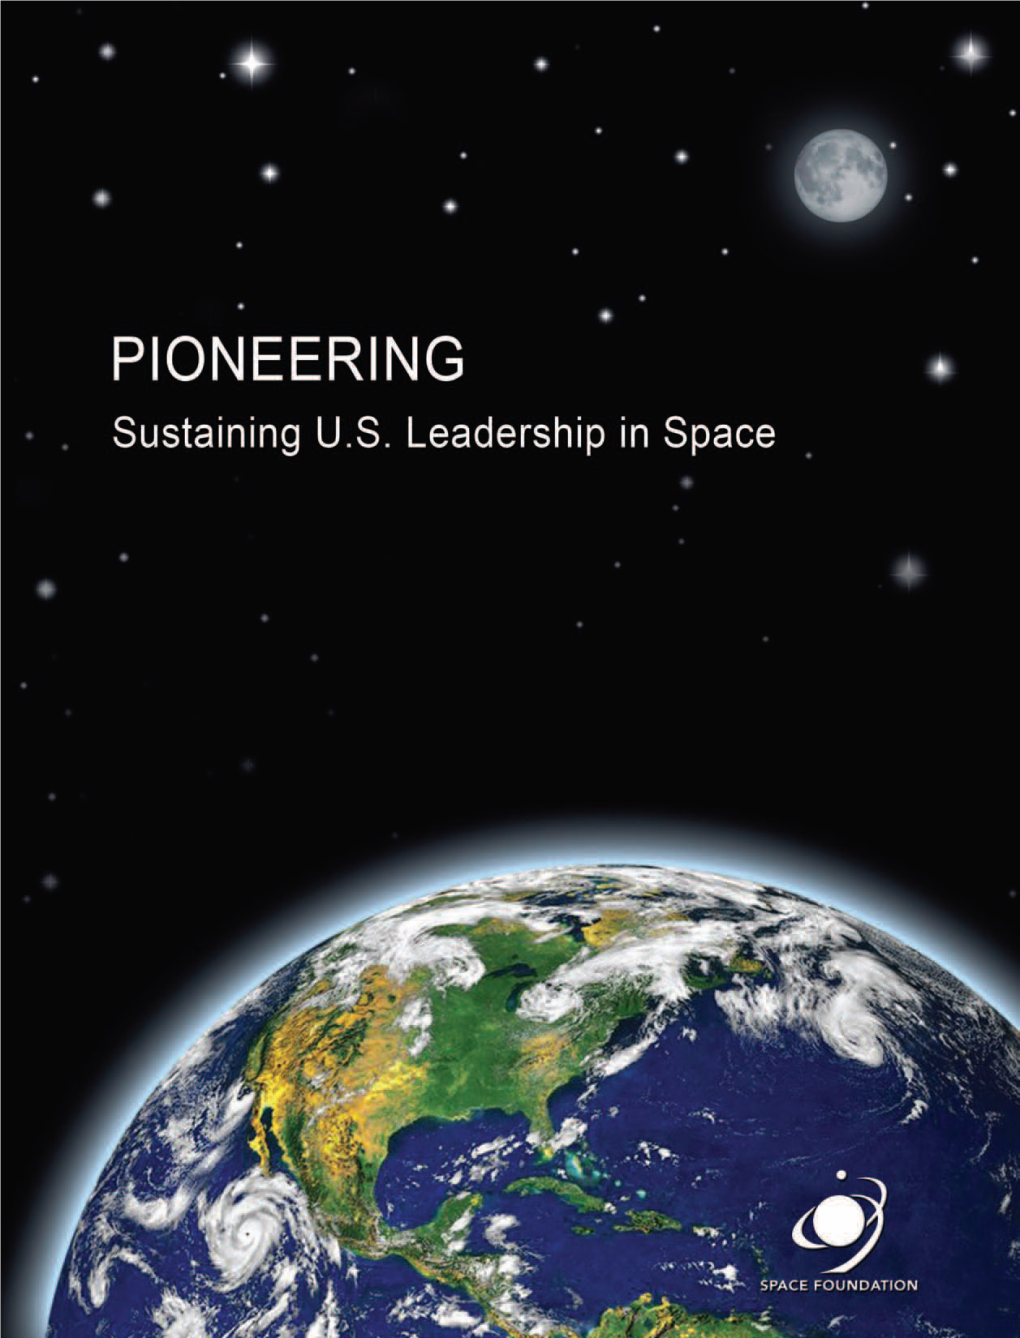 PIONEERING: Sustaining U.S. Leadership in Space